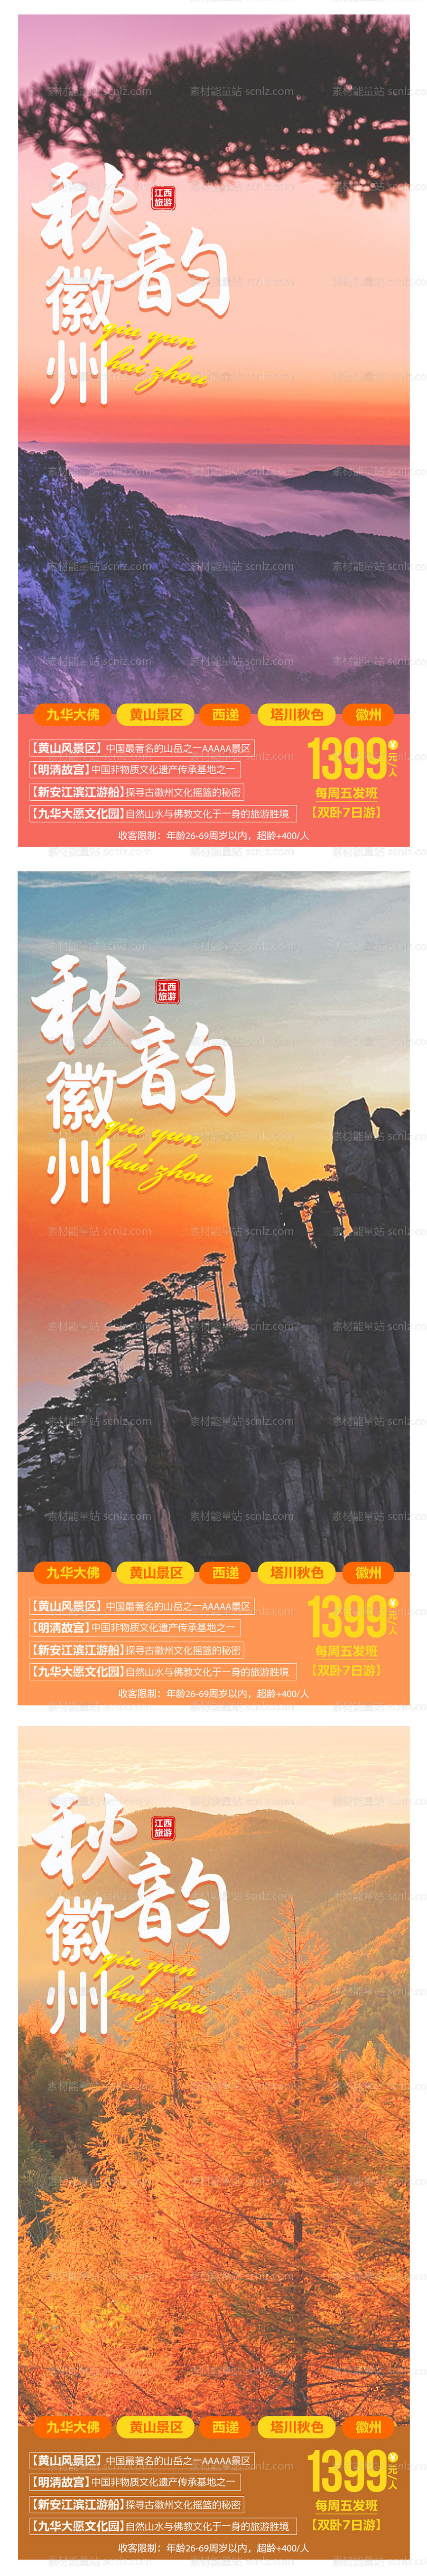 素材能量站-秋韵徽州旅游系列海报